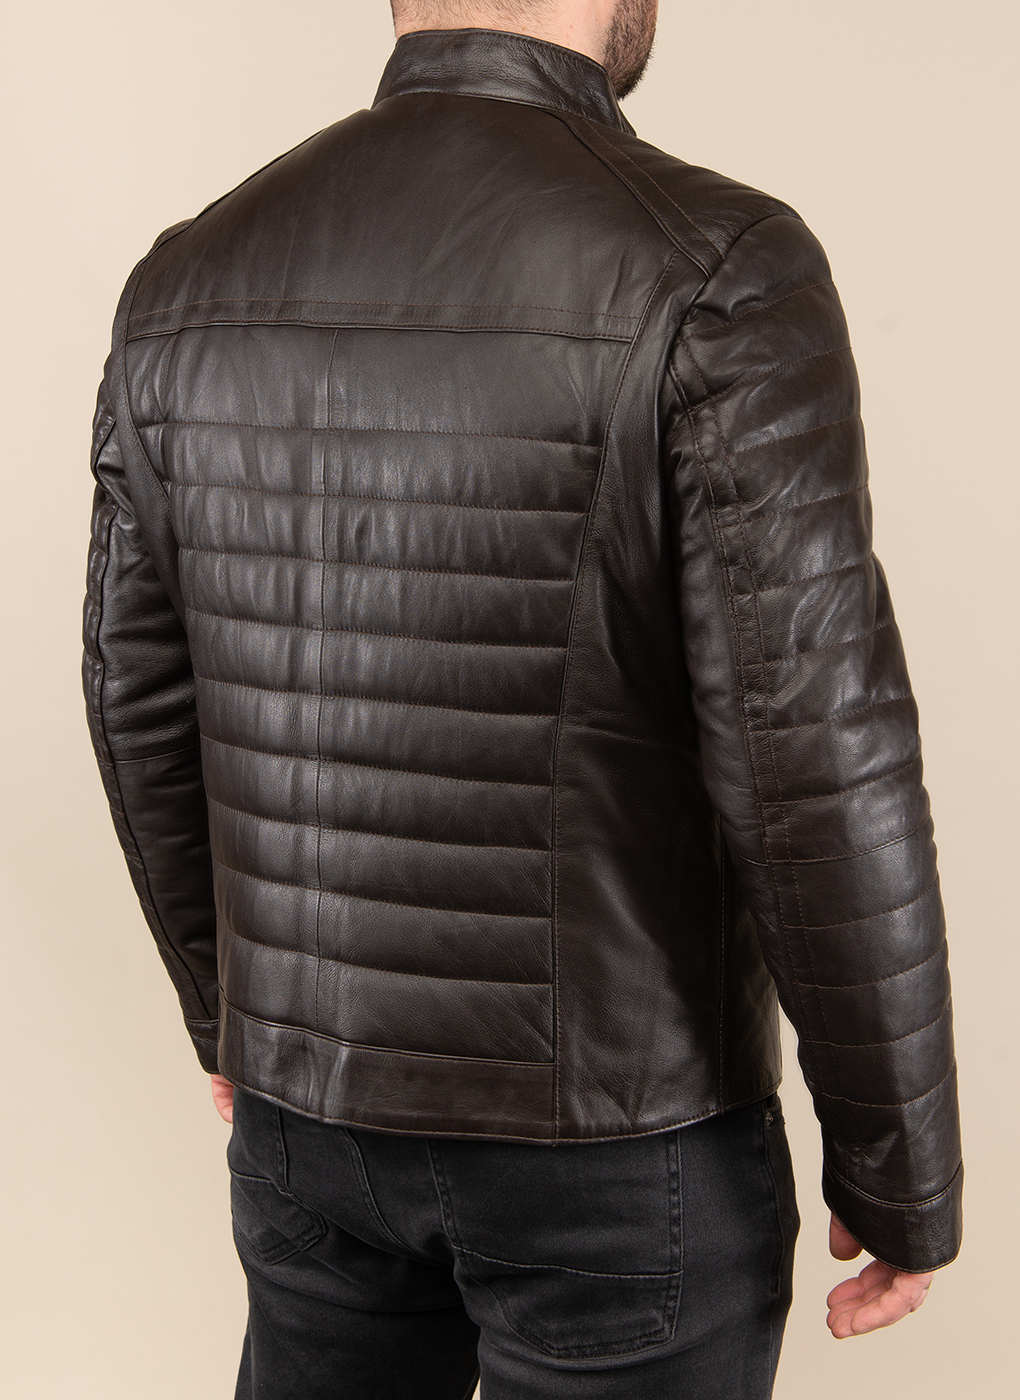 Кожаная куртка мужская Каляев 49306 коричневая 46 RU